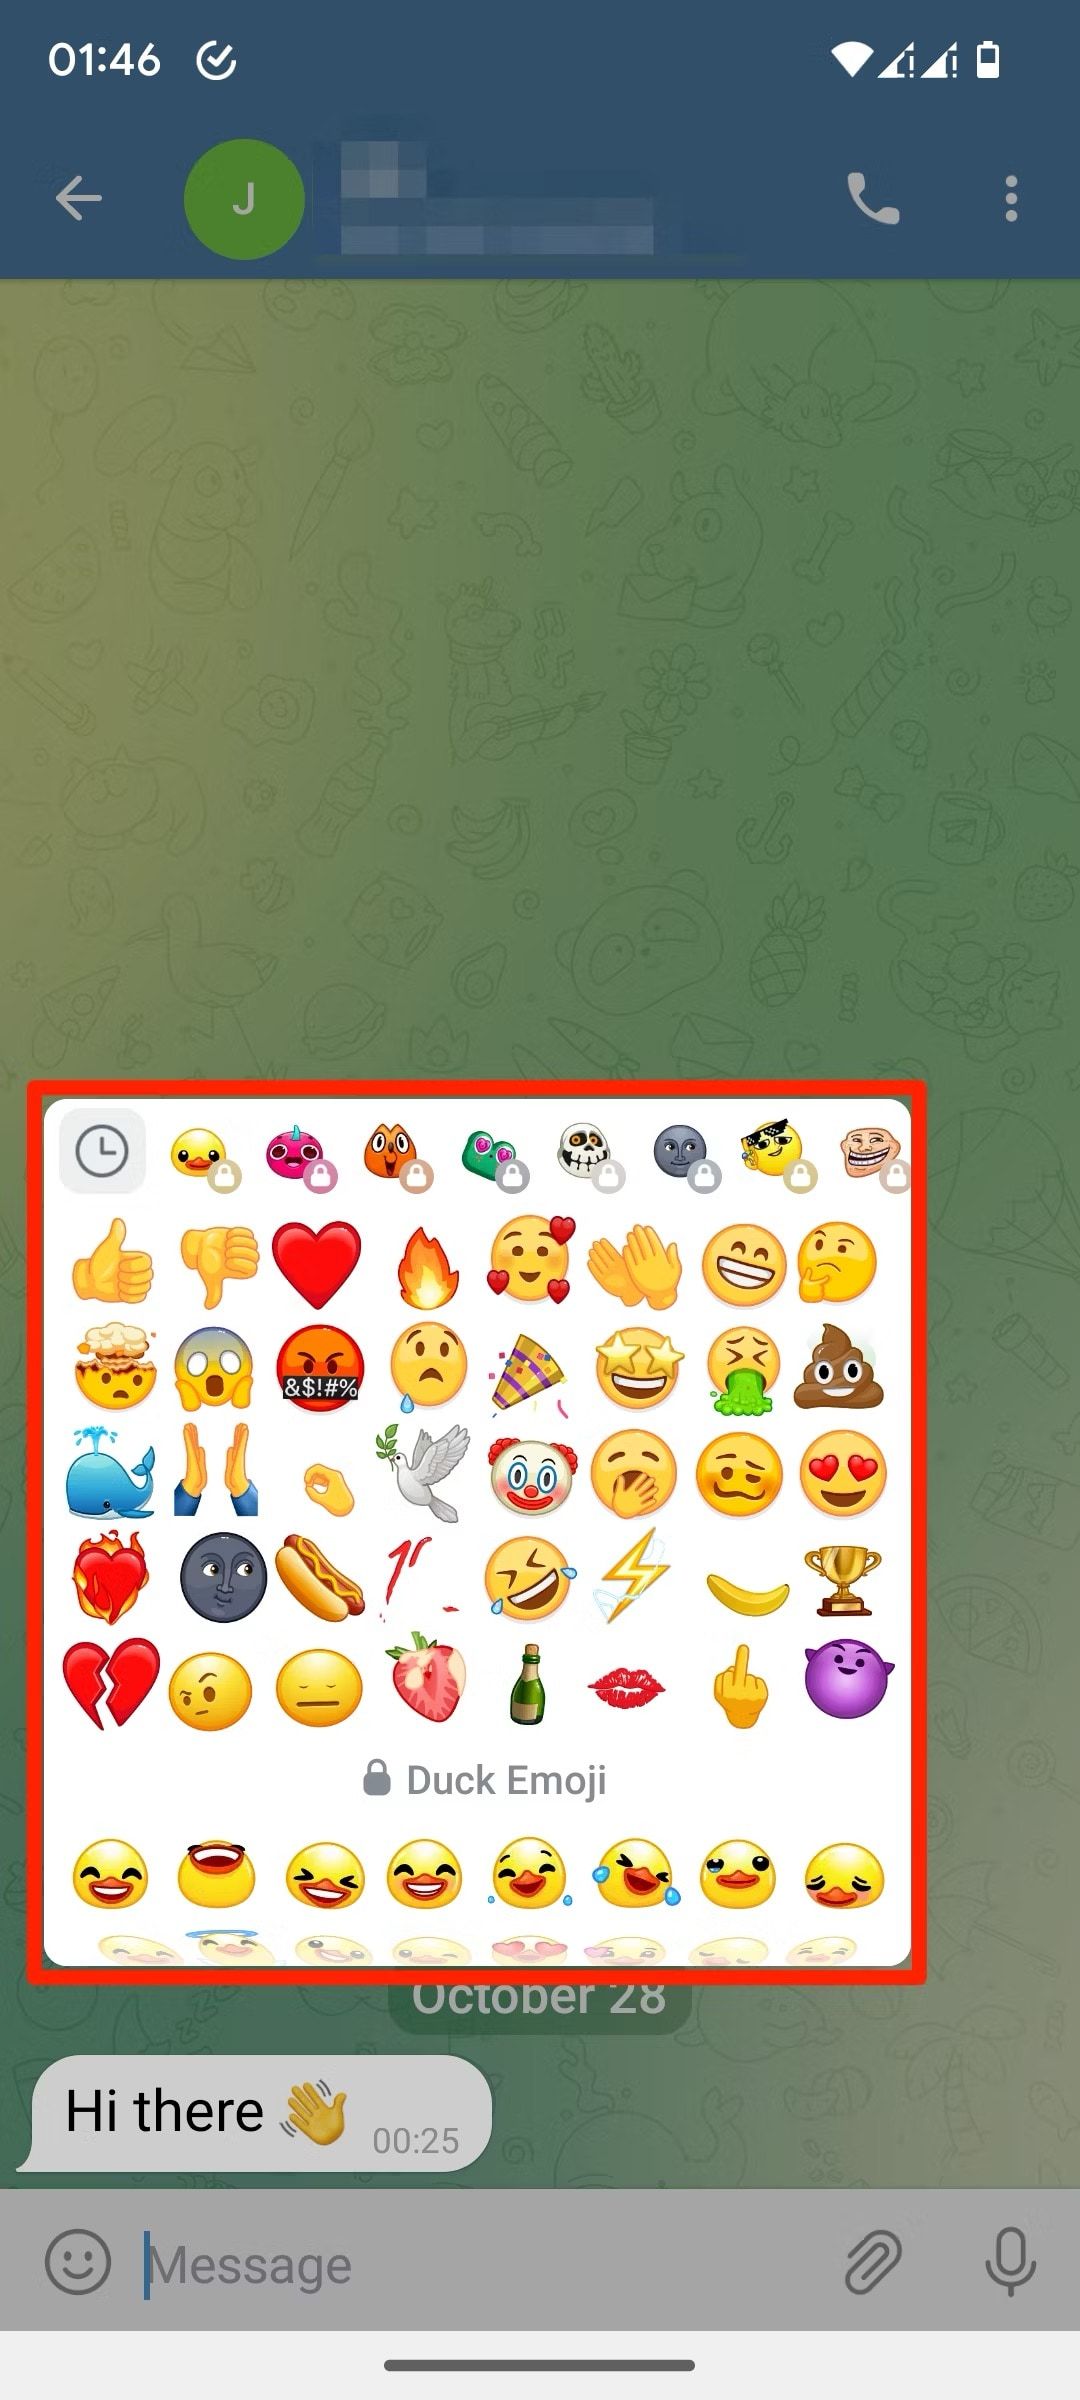 Telegram emoji reaction selection page screenshot